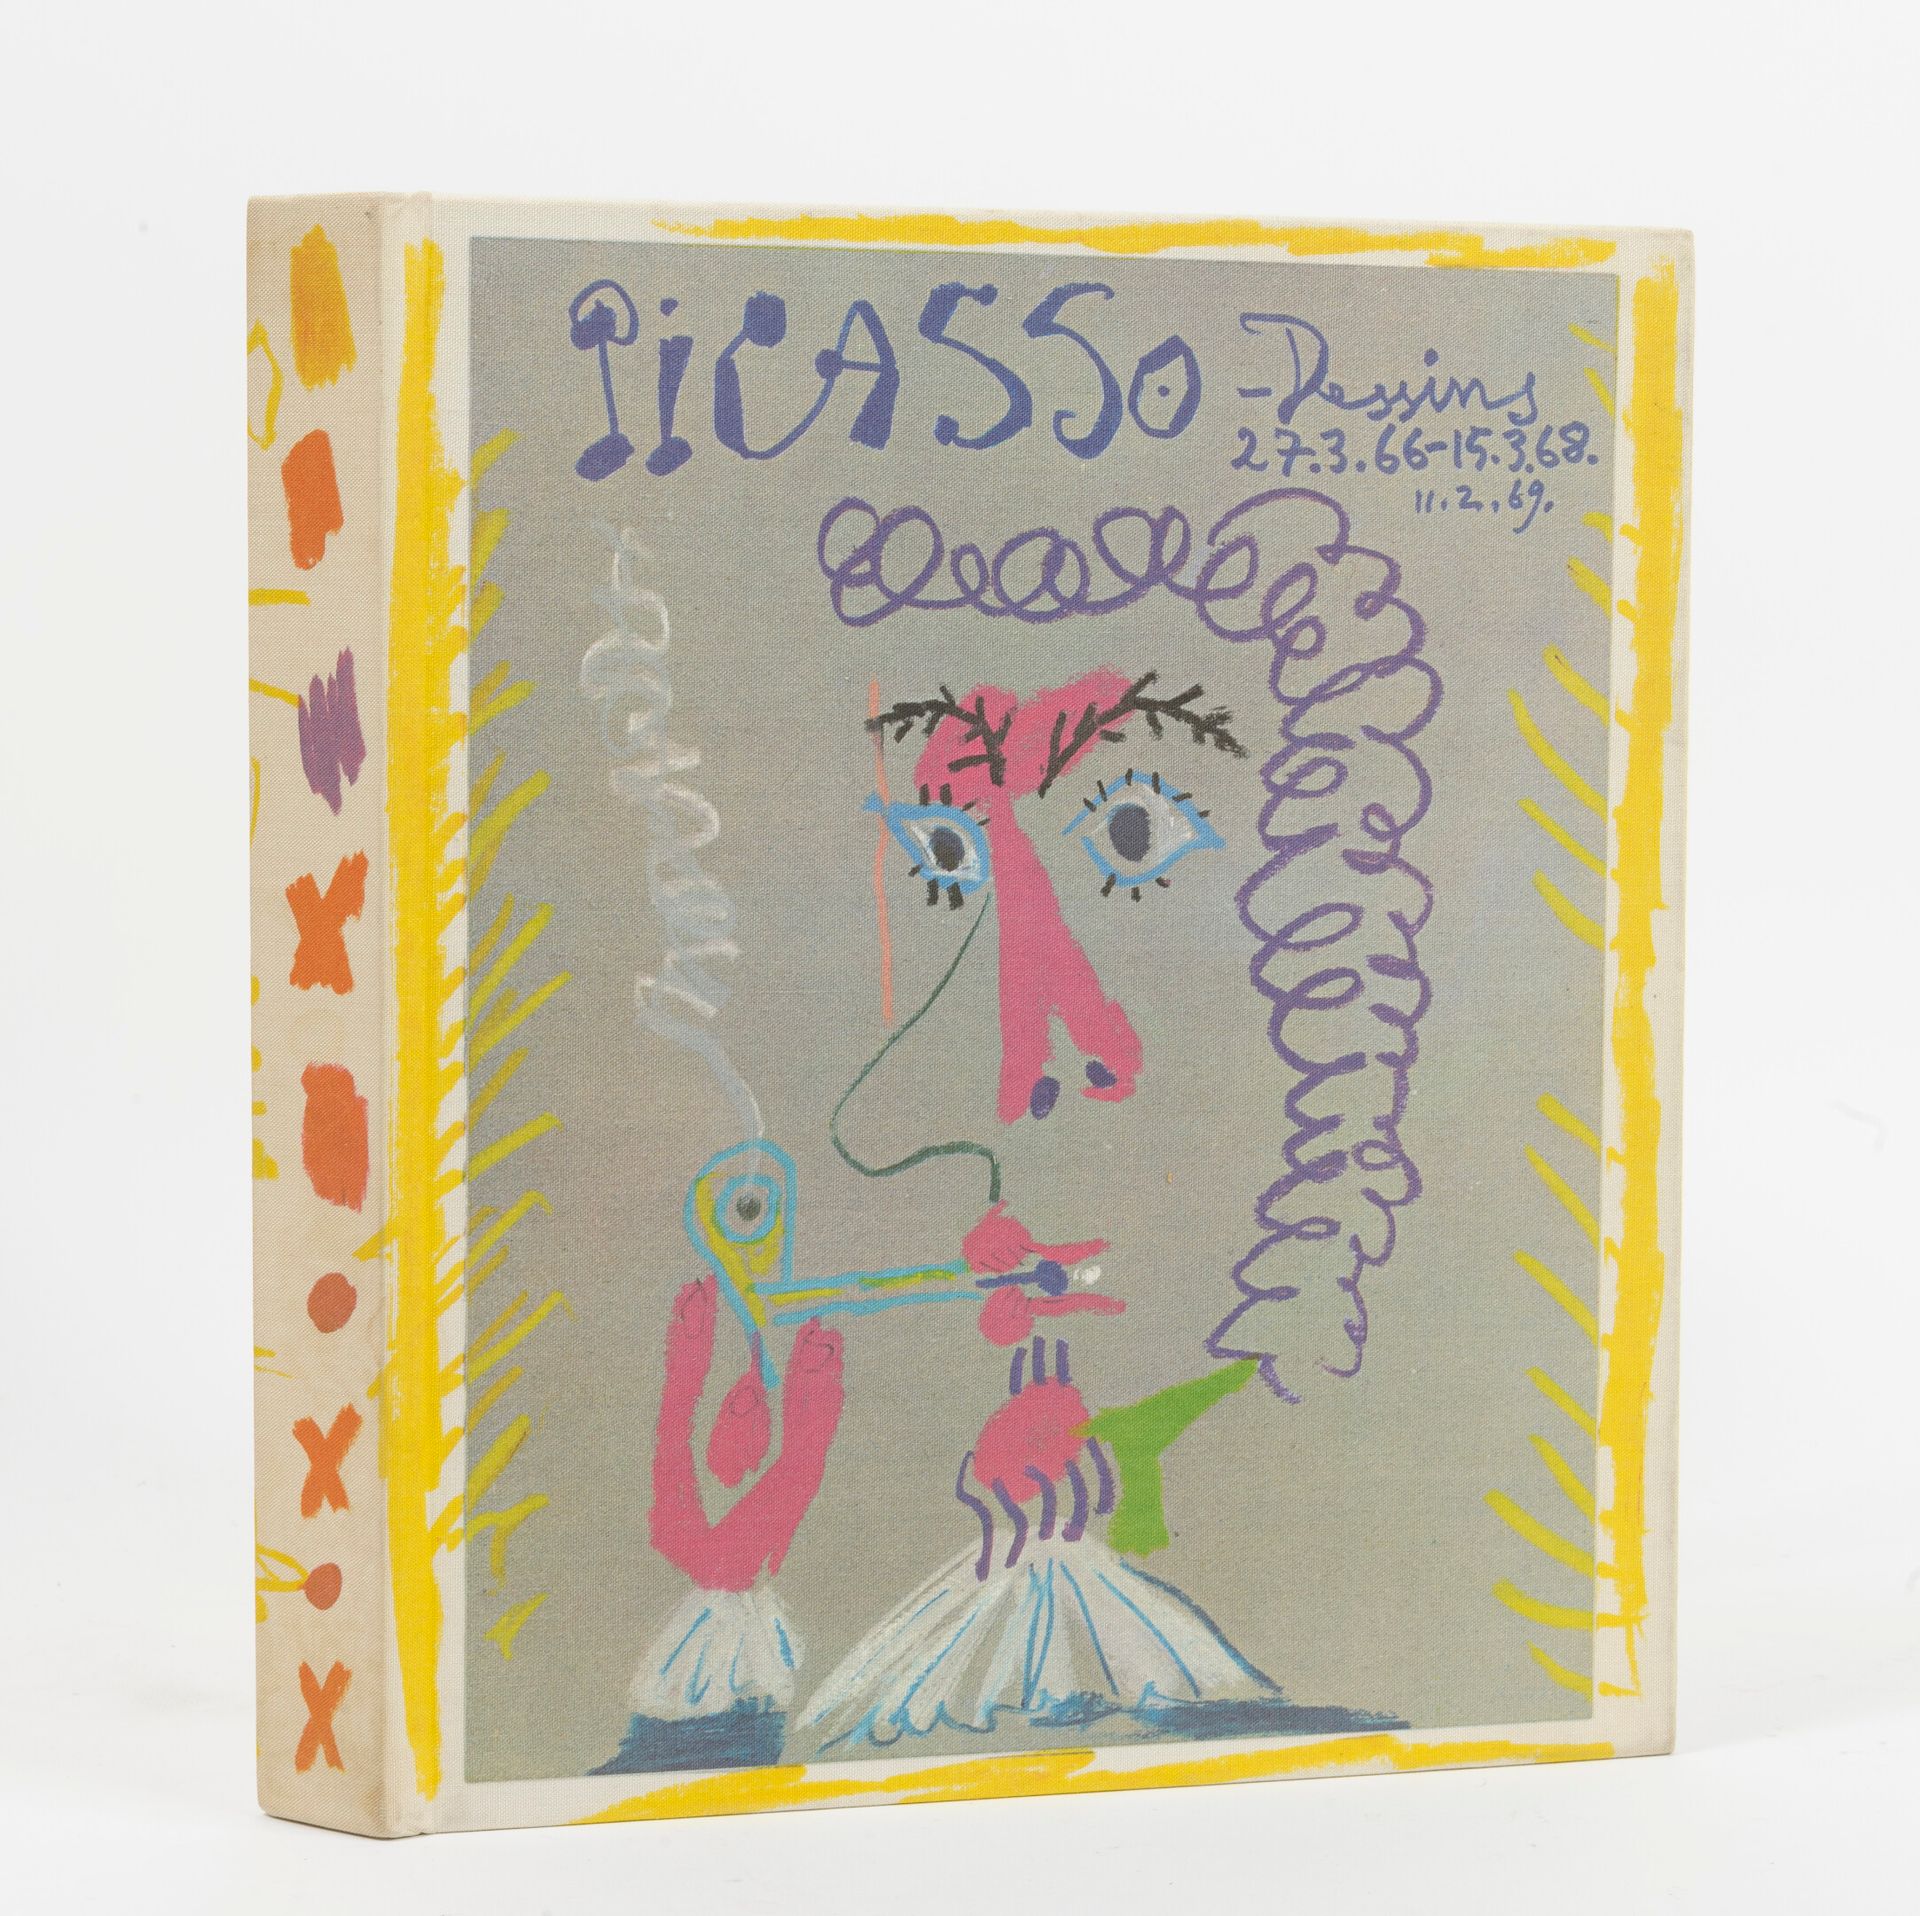 FELD, Charles Picasso, Les Dessins du 27.3.66 au 15.3.68. 

Préface de René Char&hellip;